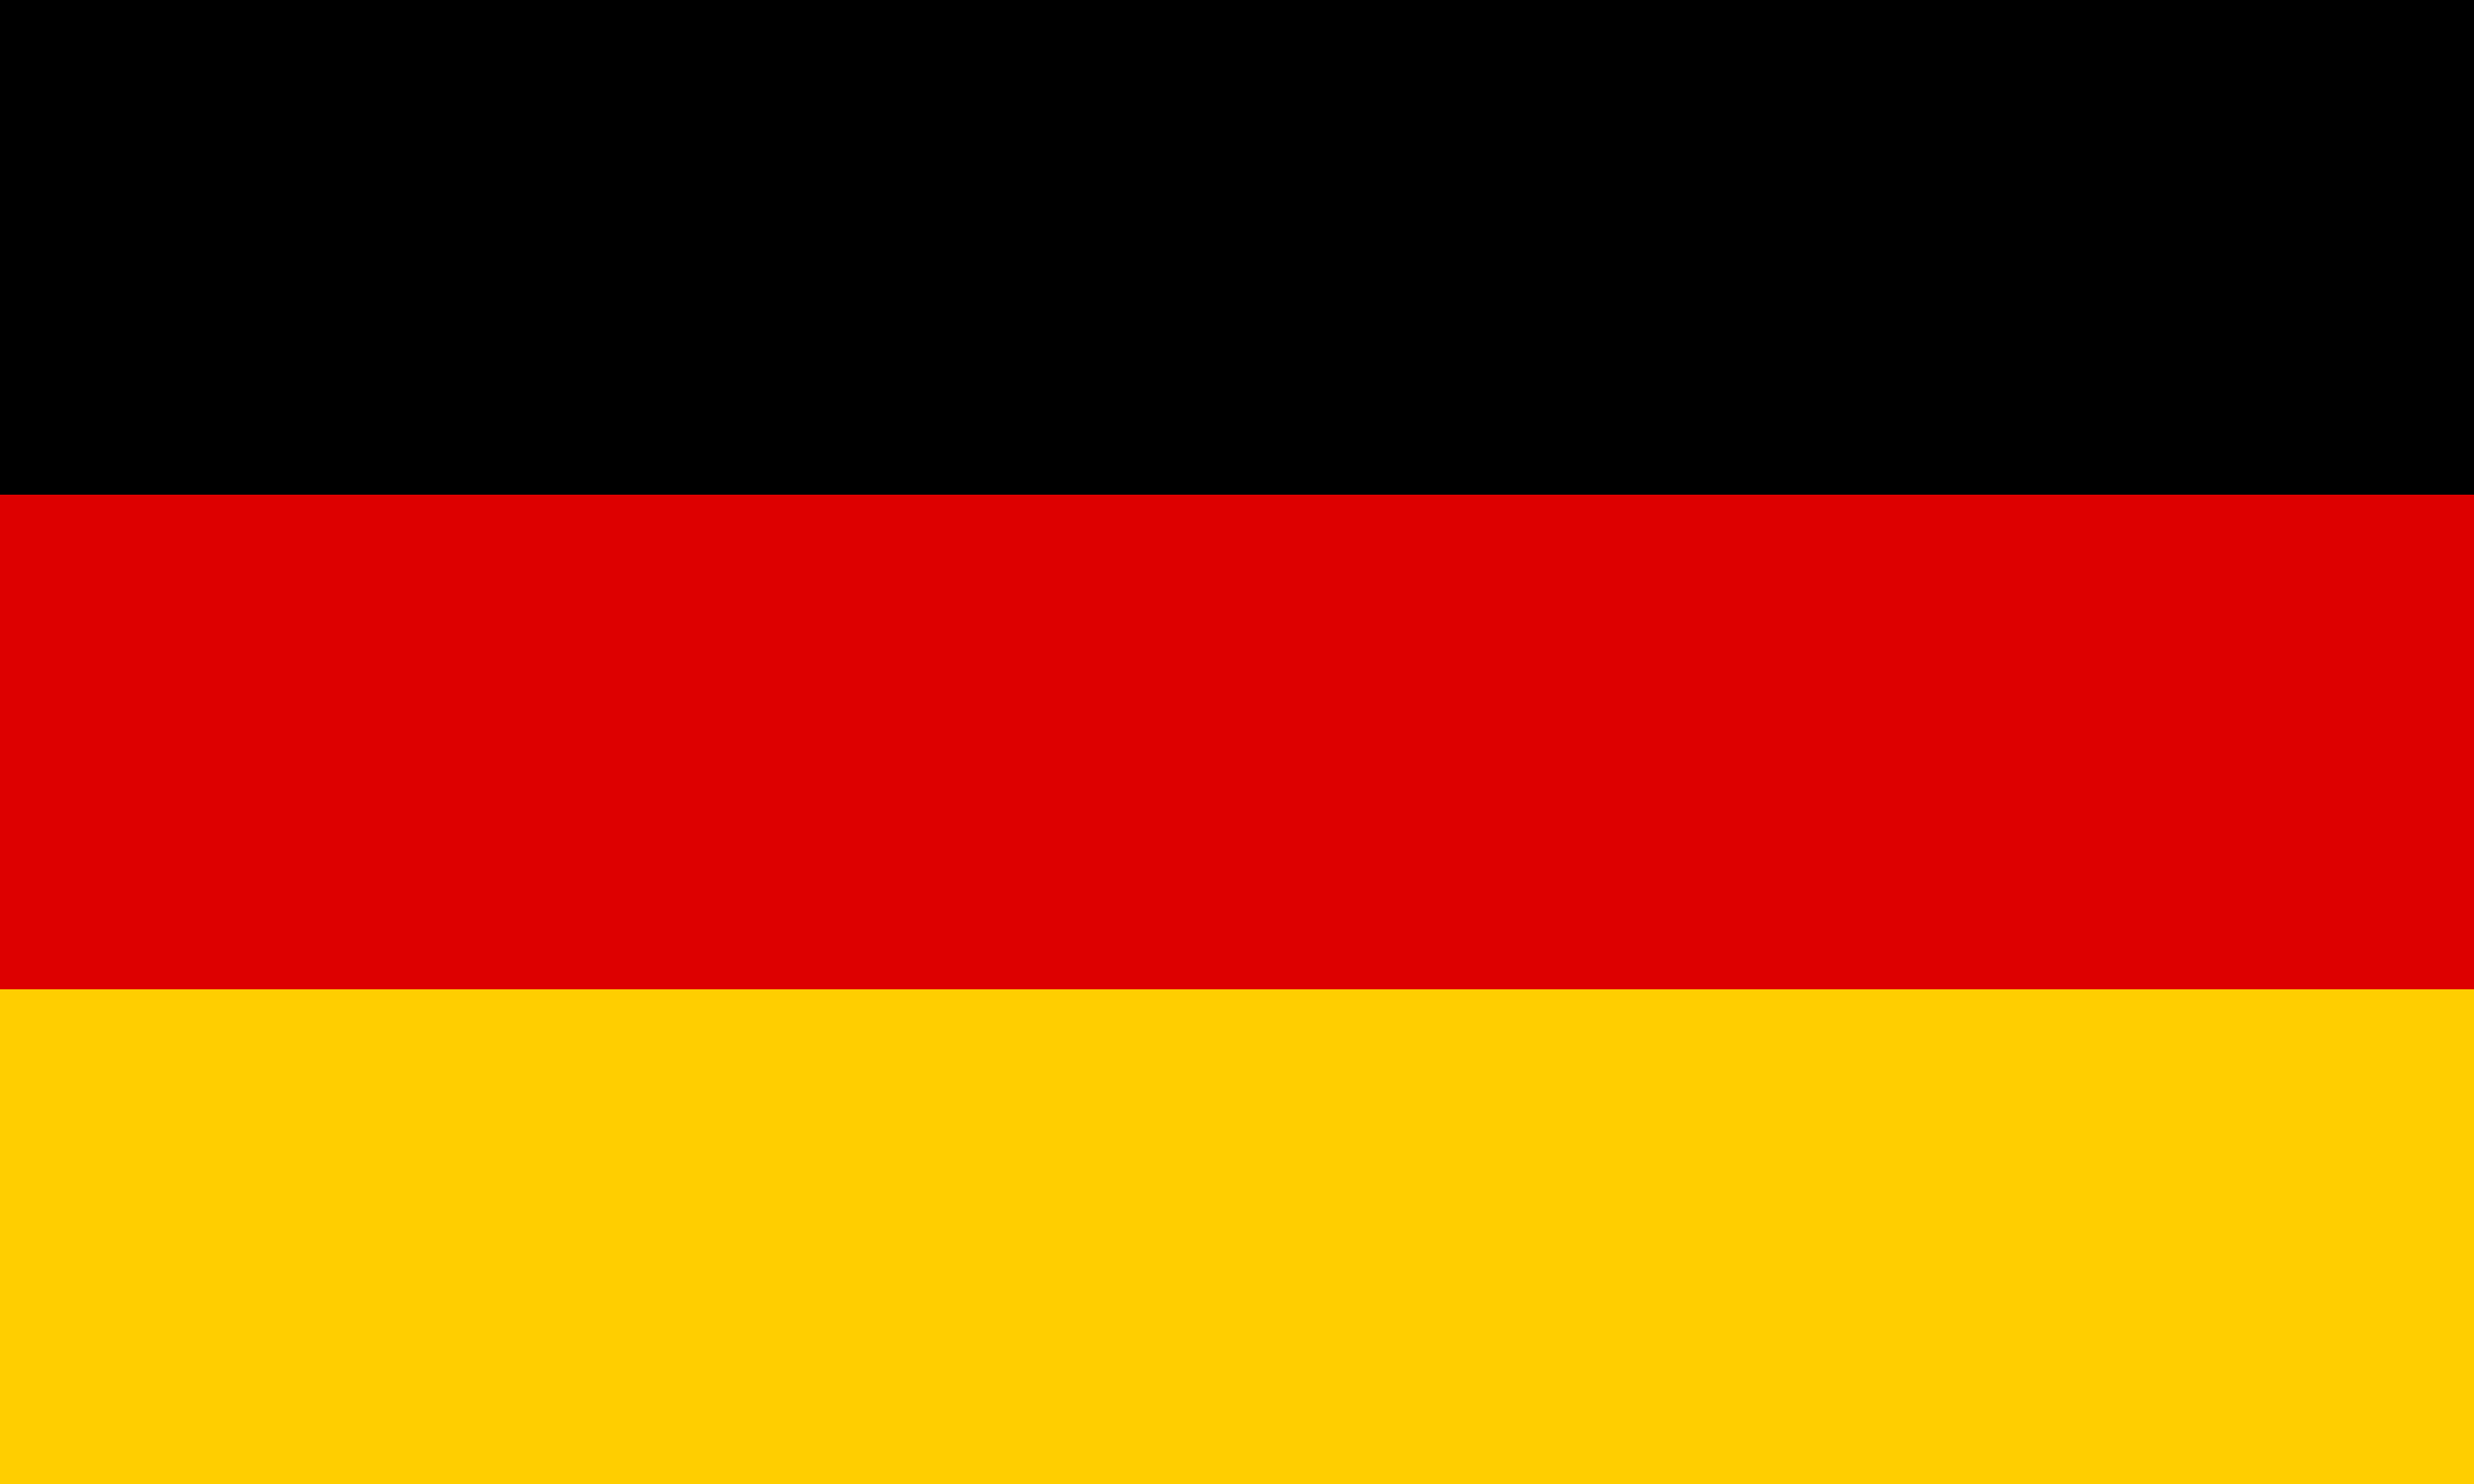 Résultat de recherche d'images pour "icone drapeau allemand"